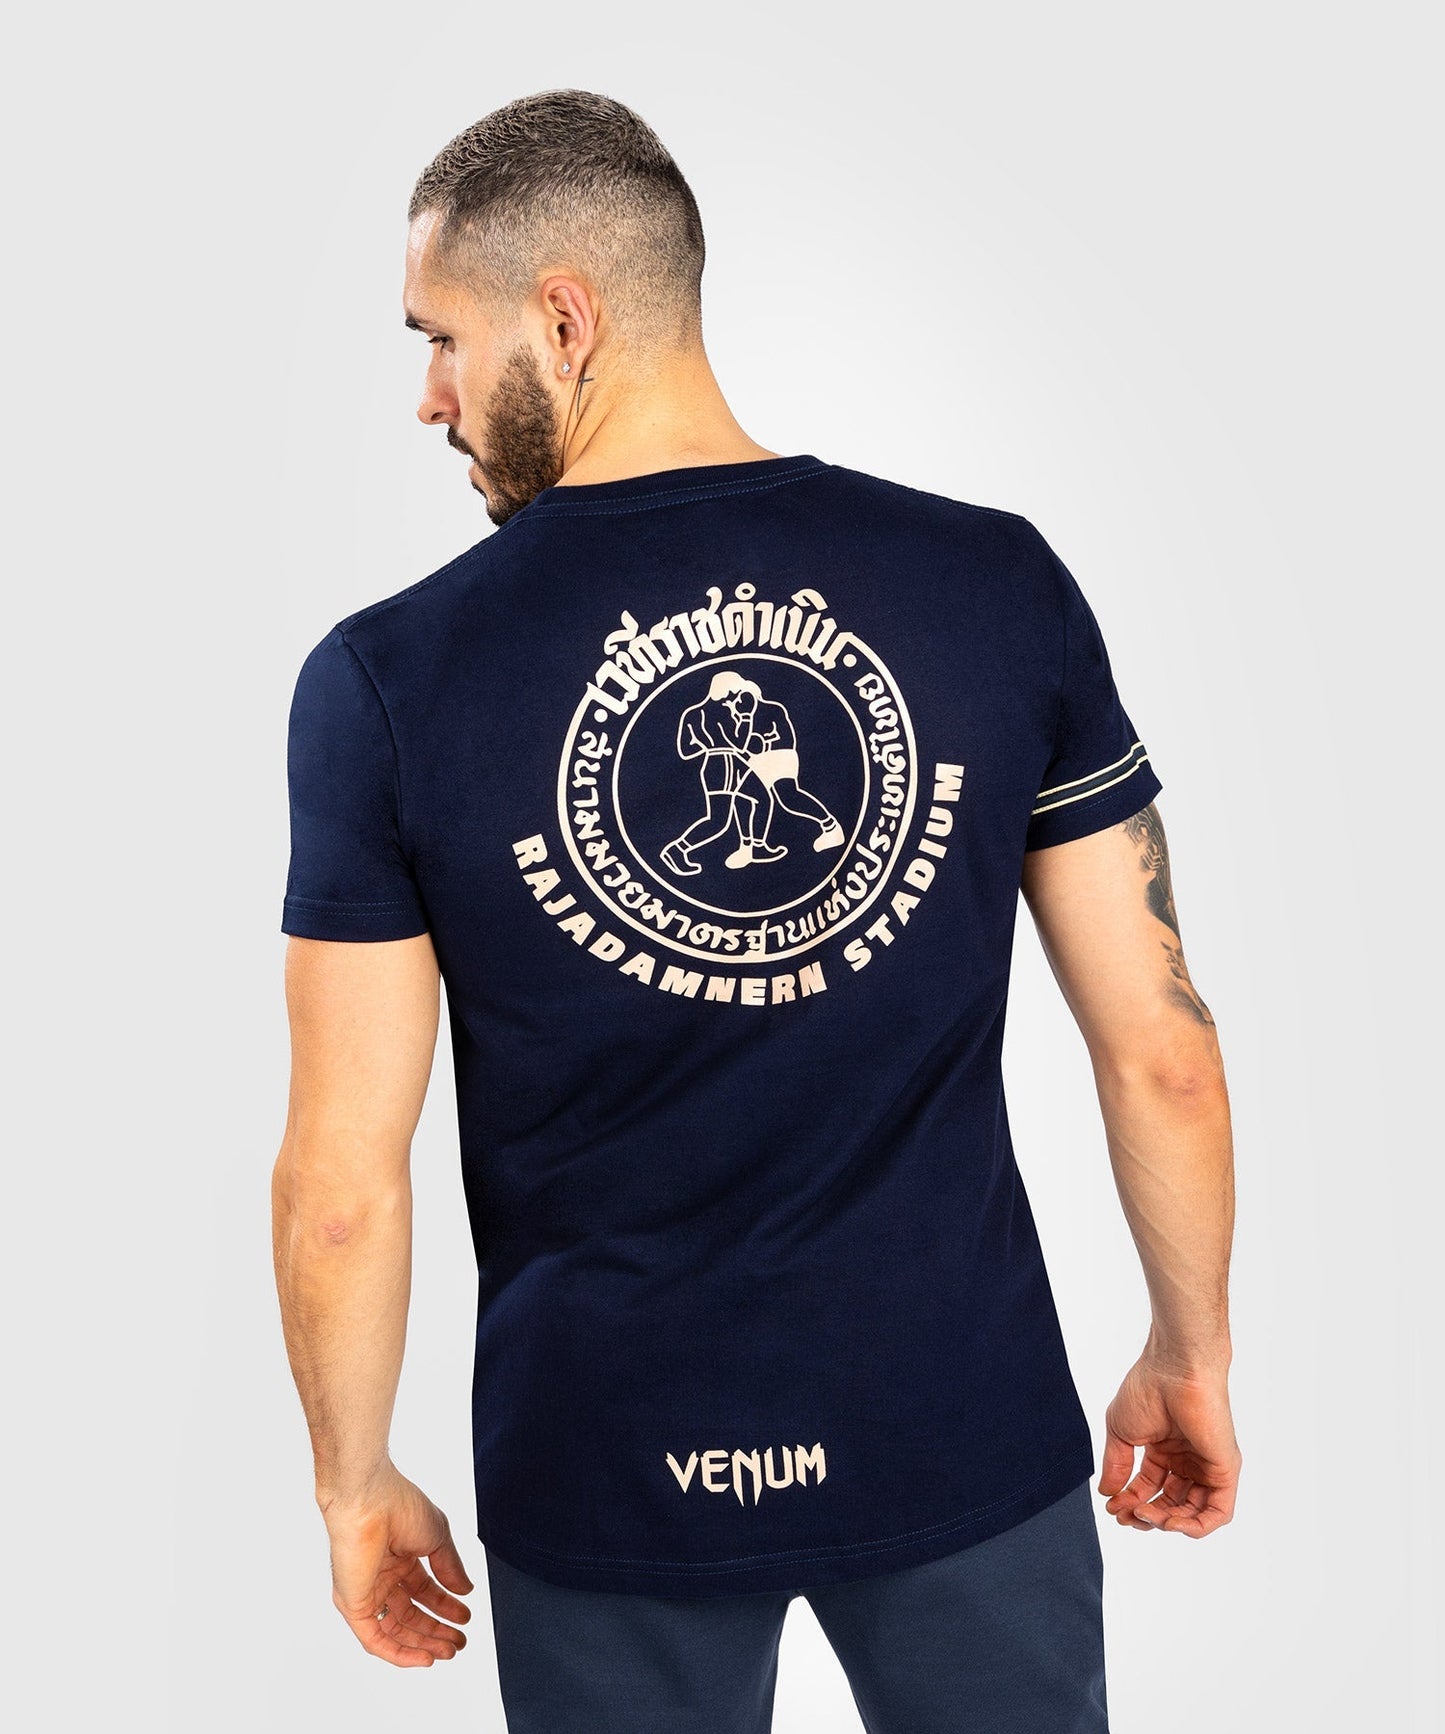 RAJADAMNERN x VENUM T-Shirt - Marineblau